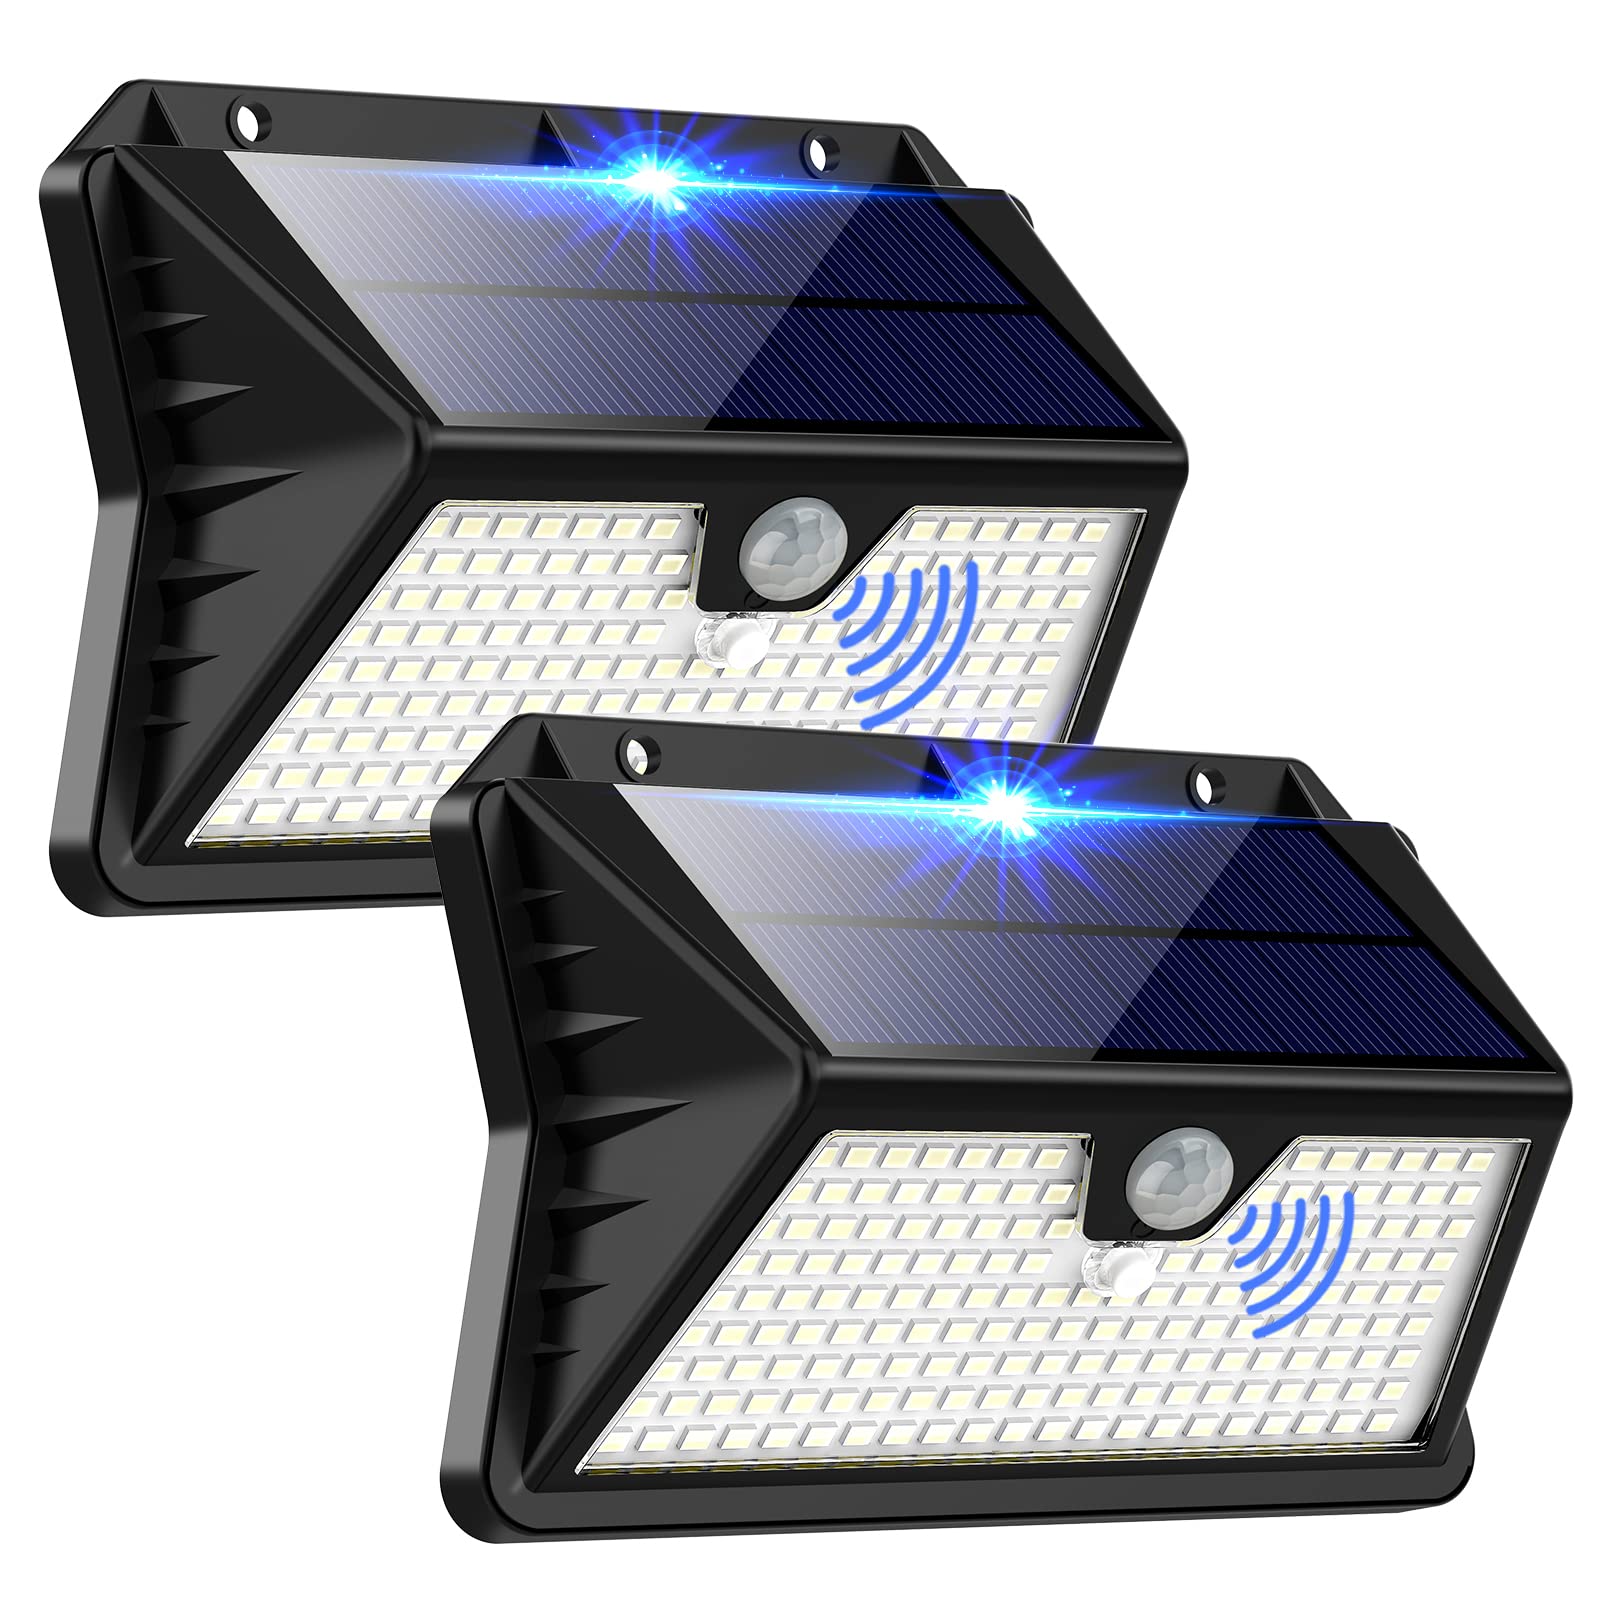 Projecteurs LED connectés extérieurs – Meilleures lampes connectées étanches